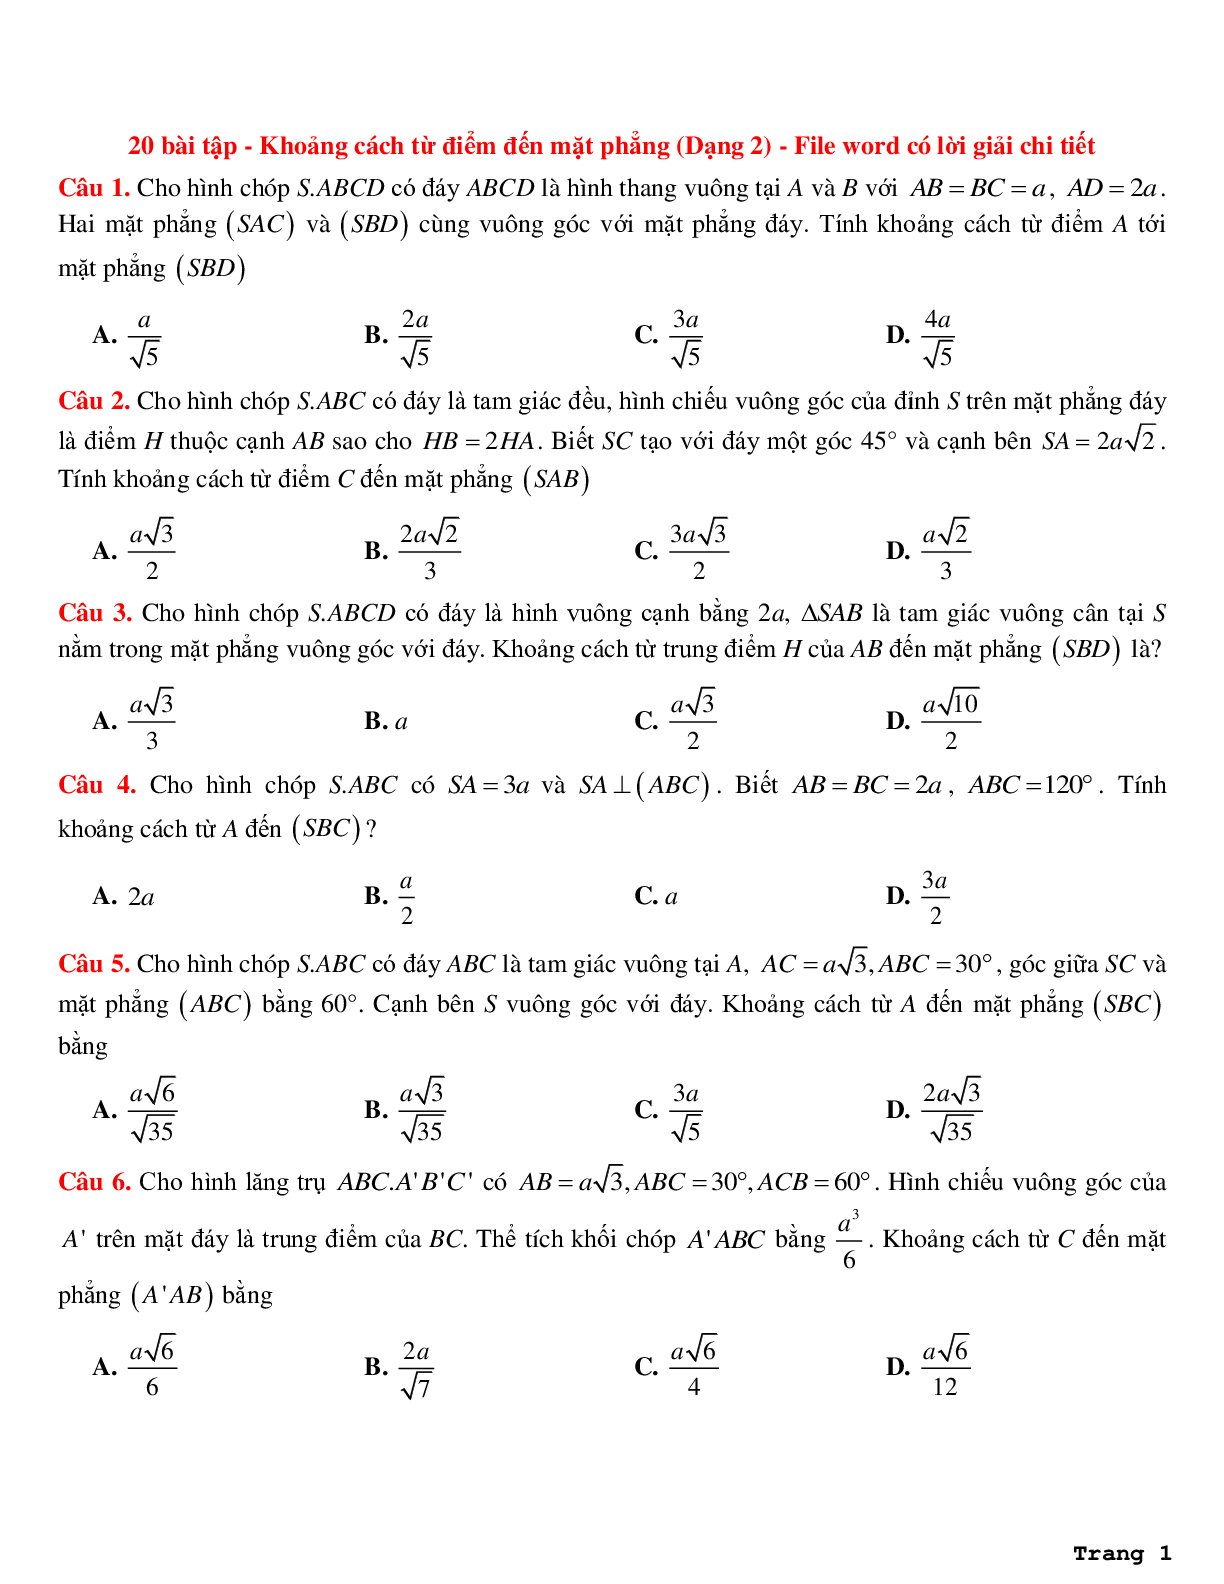 20 bài tập về khoảng cách từ điểm đến mặt phẳng (dạng 2) có lời giải chi tiết (trang 1)